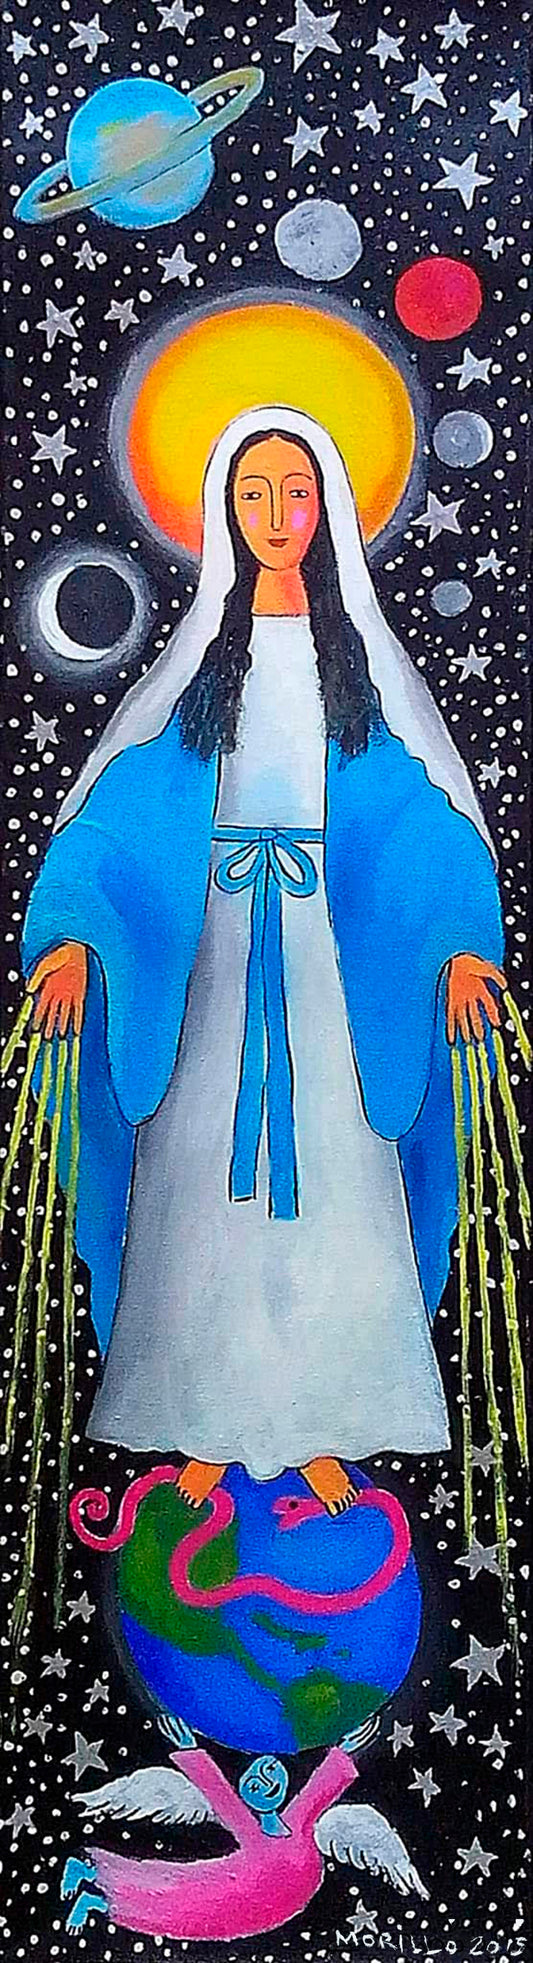 Jose Morillo 25"x13 » La Vierge Marie et la Médaille Miraculeuse 2015 Acrylique sur toile #14JM-DR